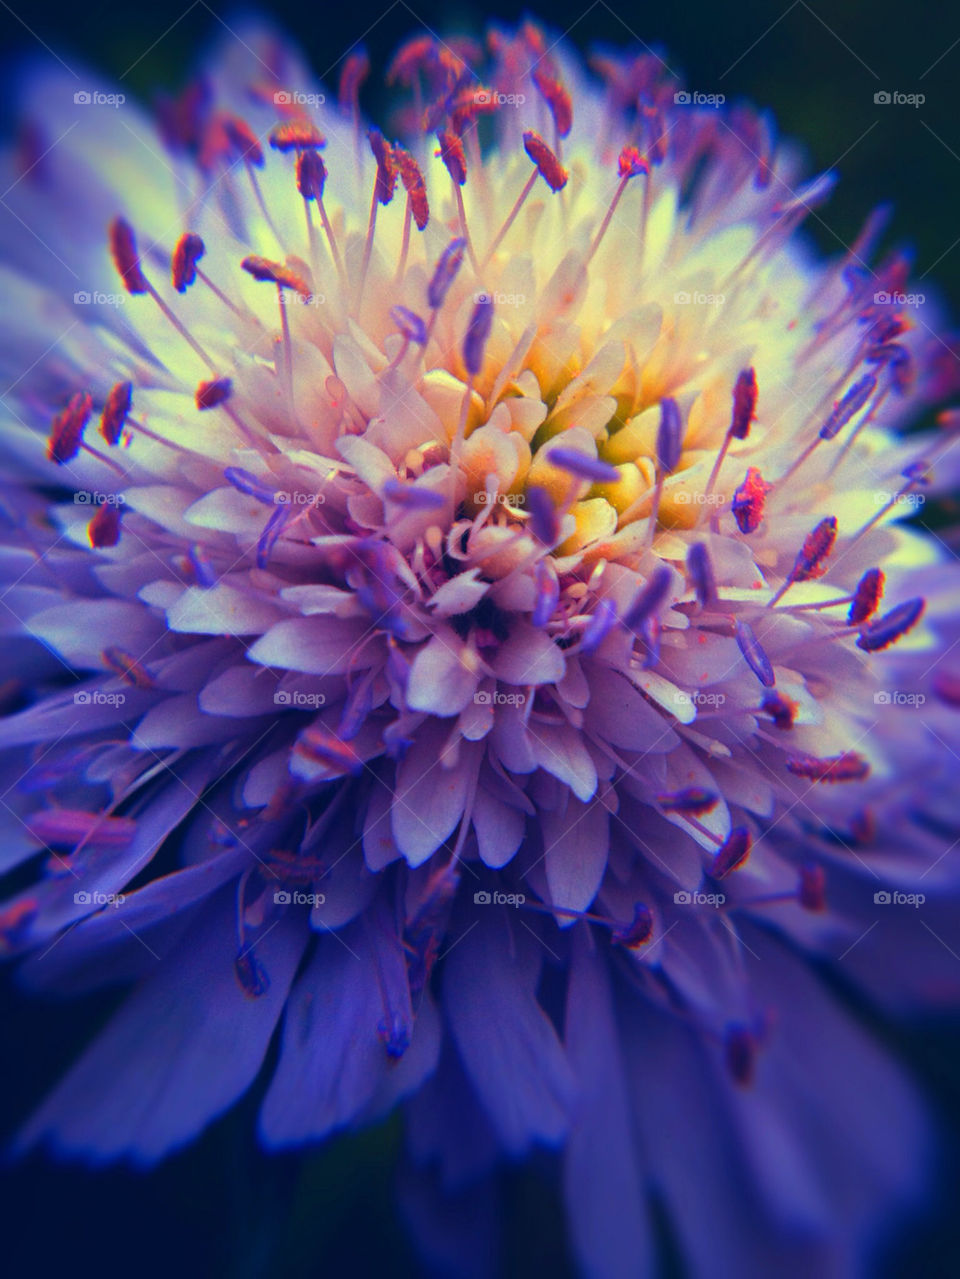 garden nature flower blue by cyrano